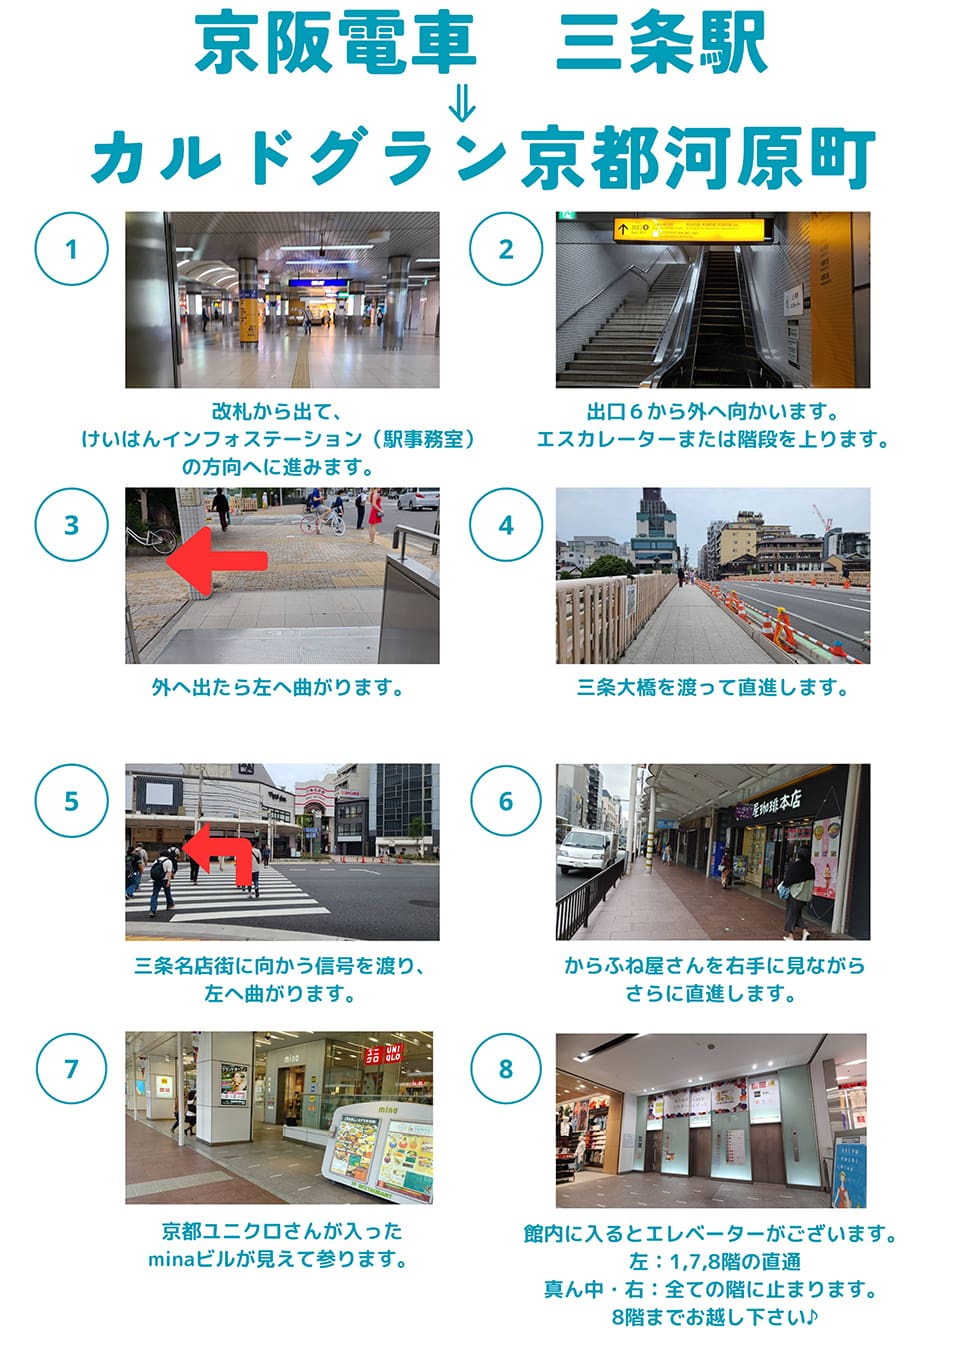 京阪電車三条駅→カルドグラン京都河原町：改札から出て、けいはんインフォメーション(駅事務室)の方向へ進みます→出口6から外へ向かいます。エスカレーターまたは階段を上ります→外へ出たら左へ曲がります→三条大橋を渡って直進します→三条名店街に向かう信号を渡り、左へ曲がります→からふね屋さんを右手に見ながらさらに直進します→京都ユニクロさんが入ったminaビルが見えて参ります→館内に入るとエレベーターがございます。左は1,7,8階の直通・真ん中と右は全ての階に止まります。8階までお越し下さい♪